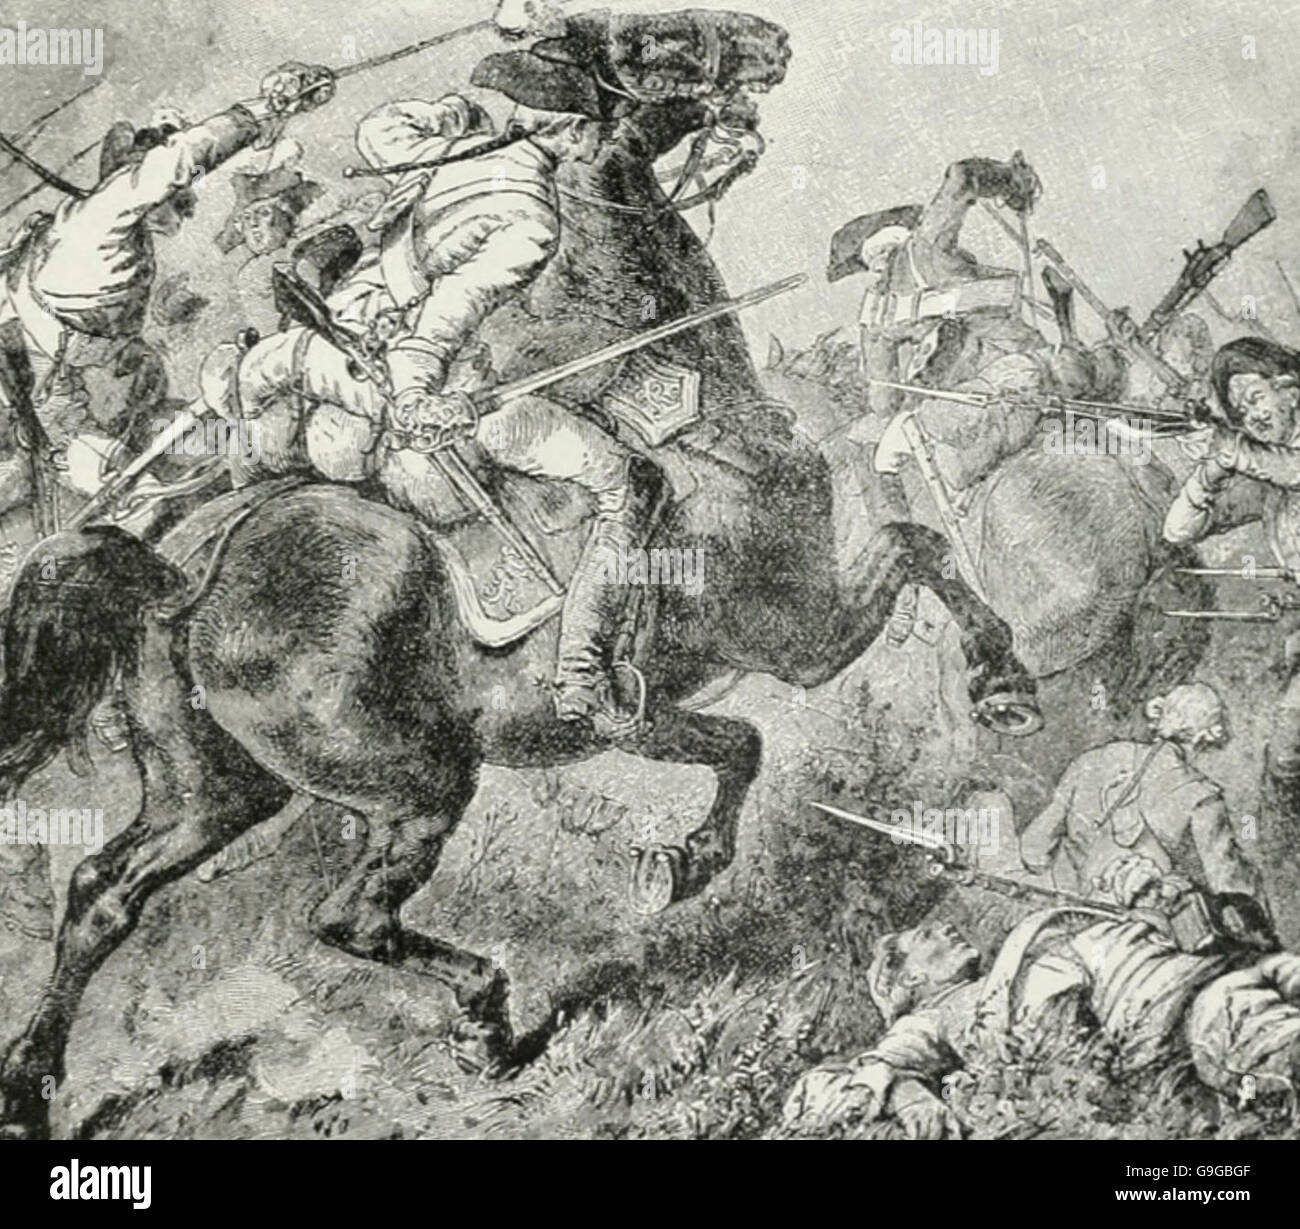 La charge de cavalerie de l'américaine à la bataille de Monmouth au cours de la guerre de la Révolution américaine Banque D'Images